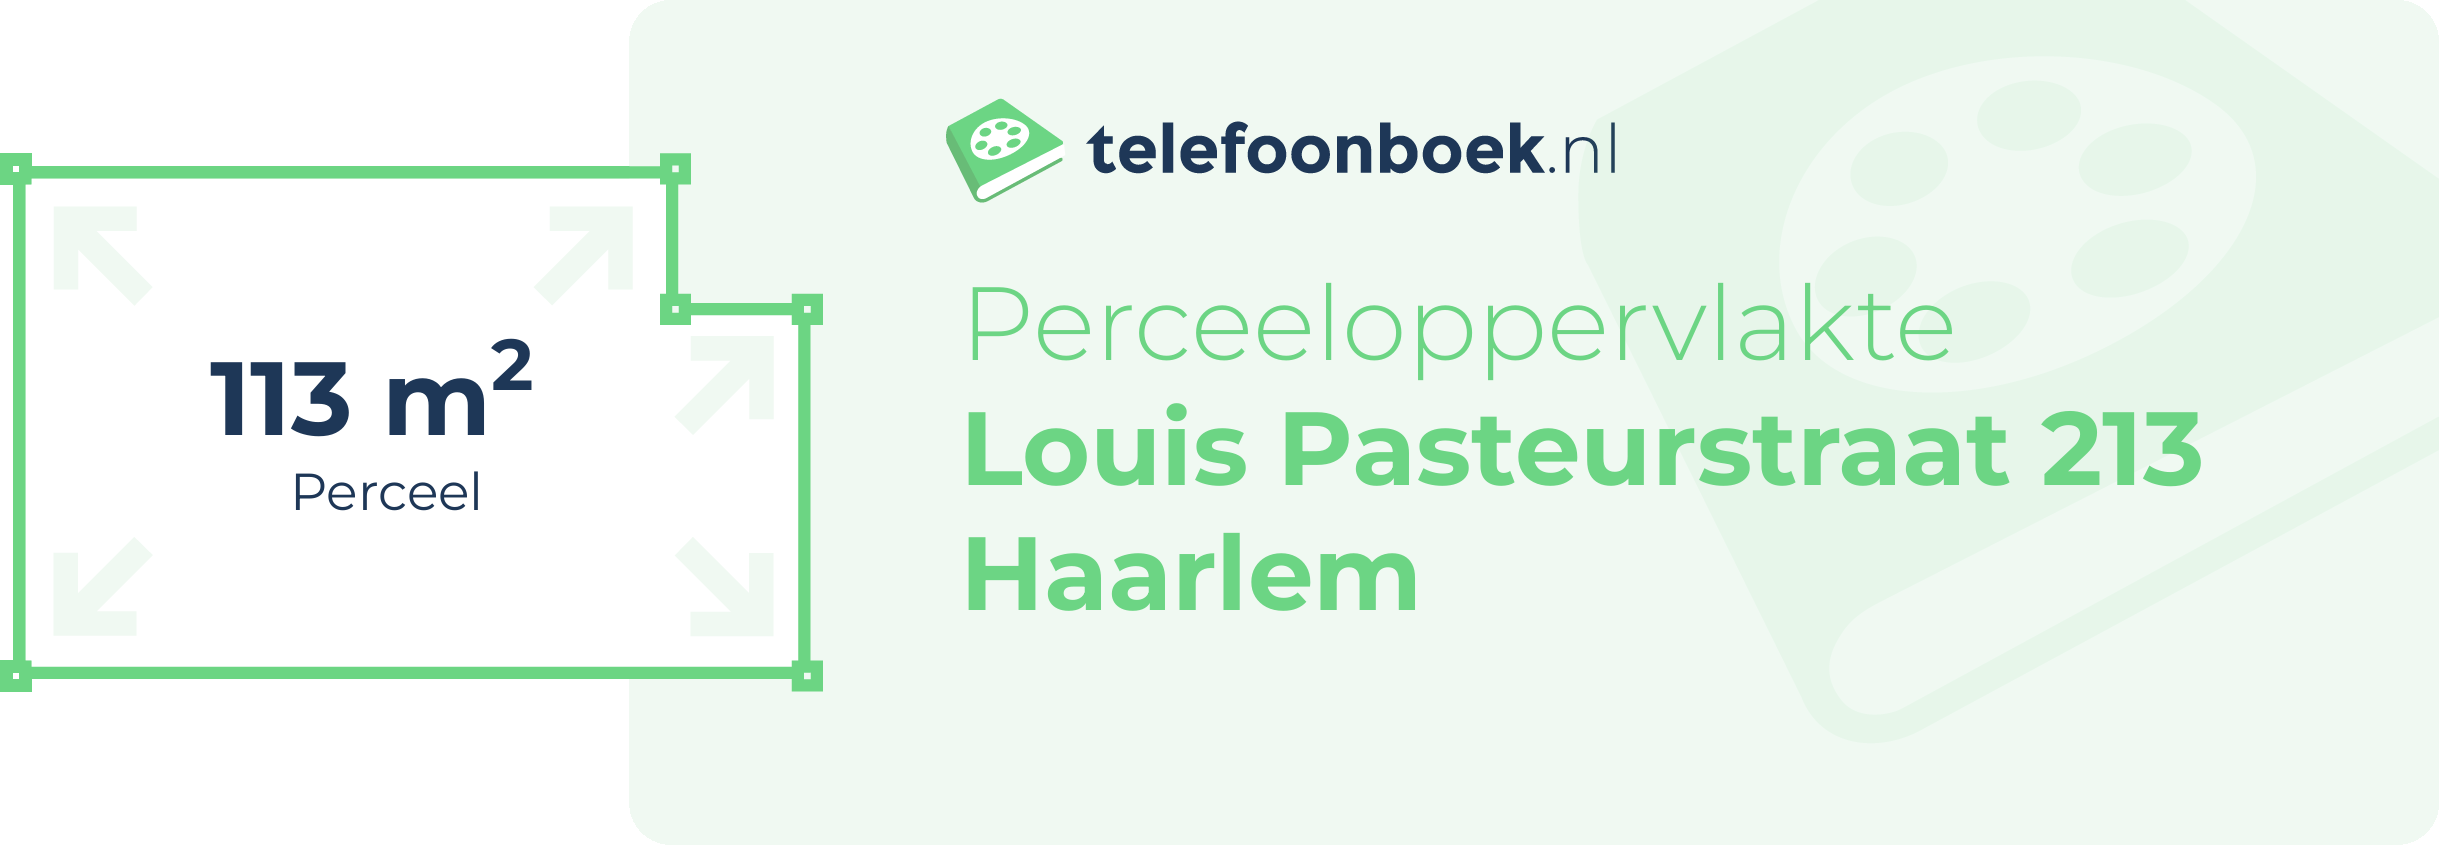 Perceeloppervlakte Louis Pasteurstraat 213 Haarlem